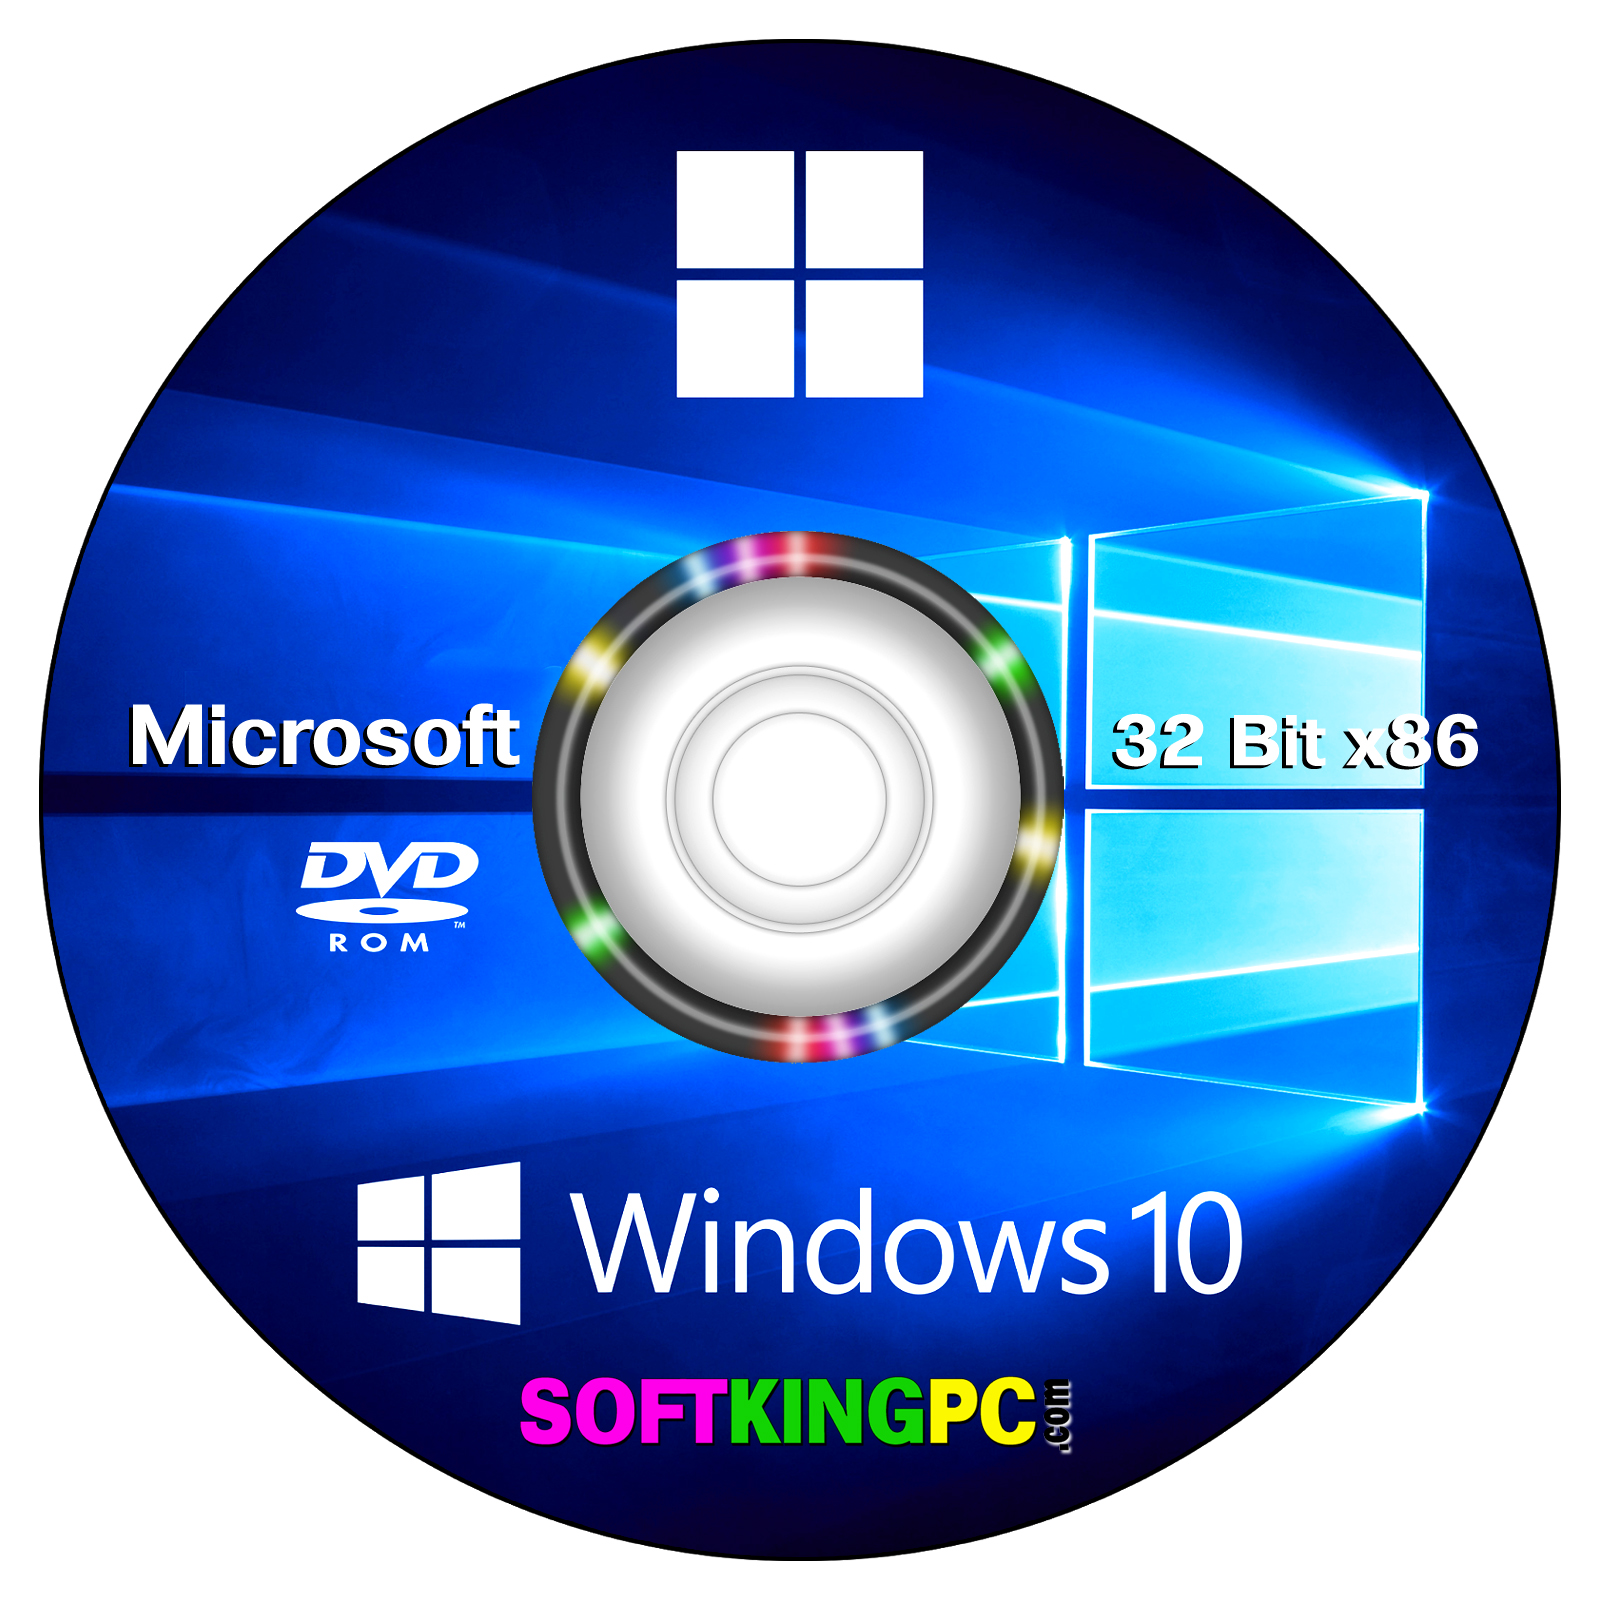 Windows 10 iso download pcriver pc